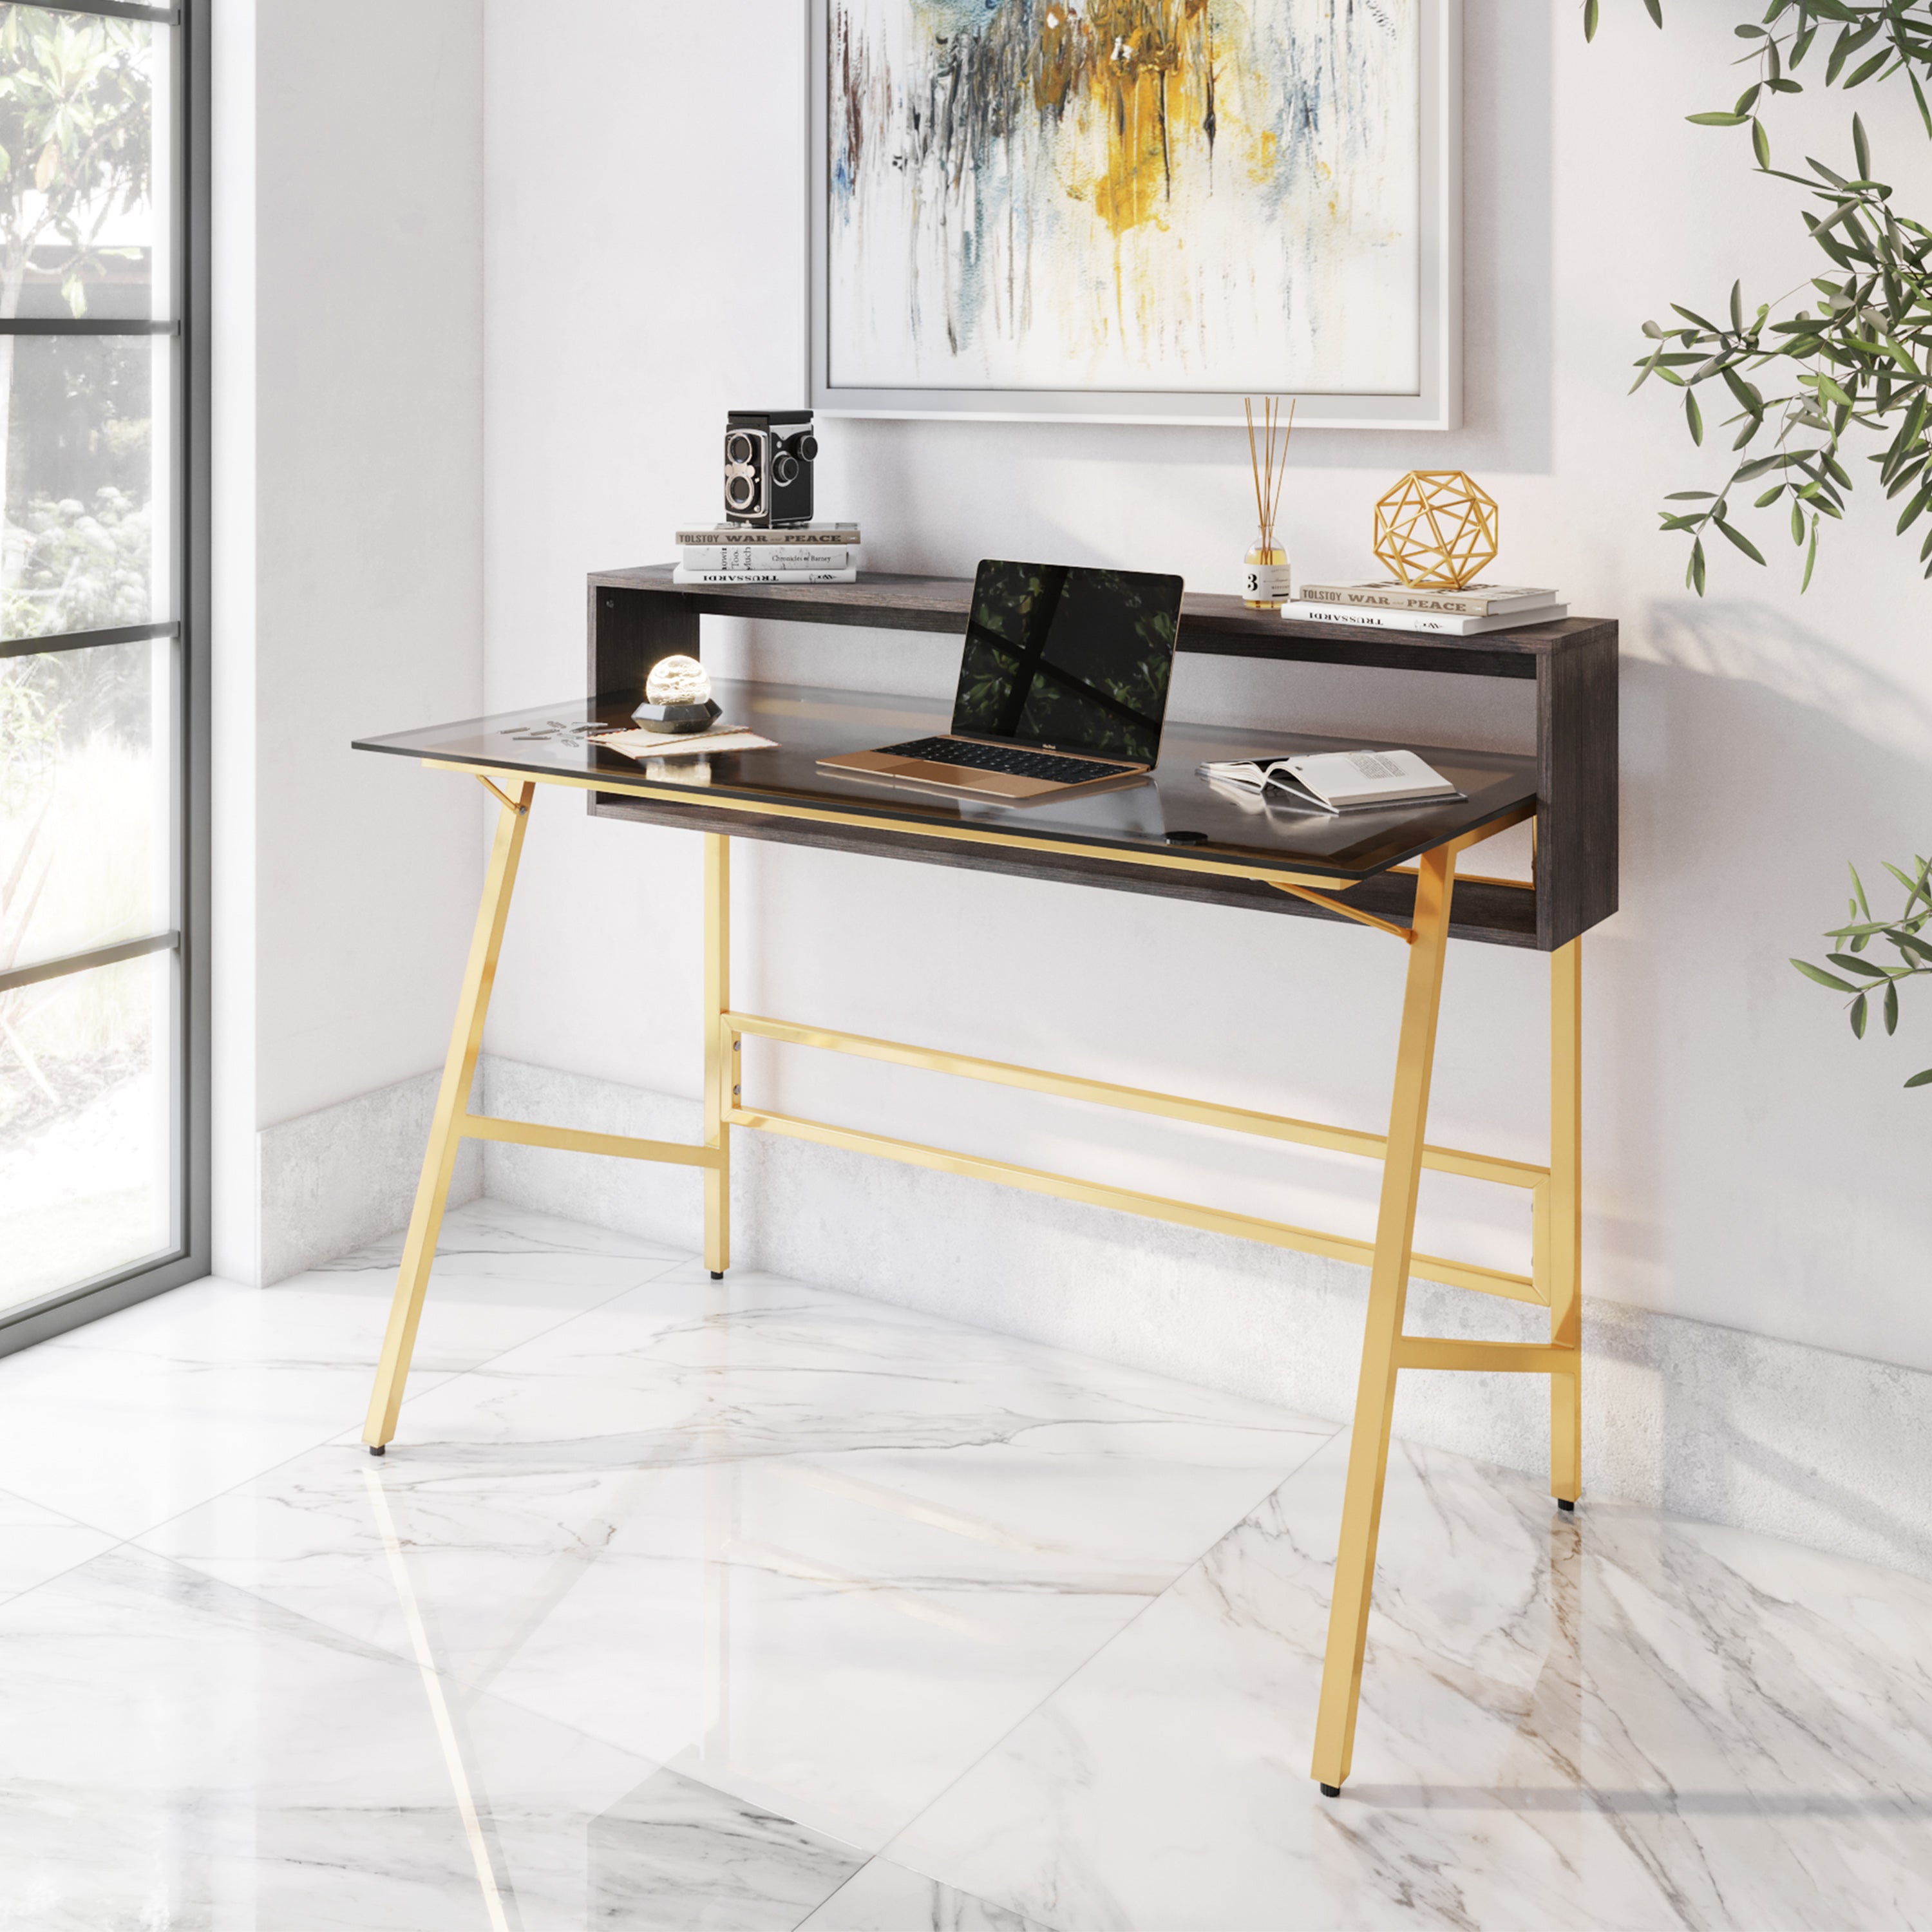  Techni Mobili L Shaped Desk with Keyboard Tray - Efficient Work  from Home Desk - Glass L Shaped Desk - Professional Work Desk For Home  Office - Versatile Glass Corner Desks